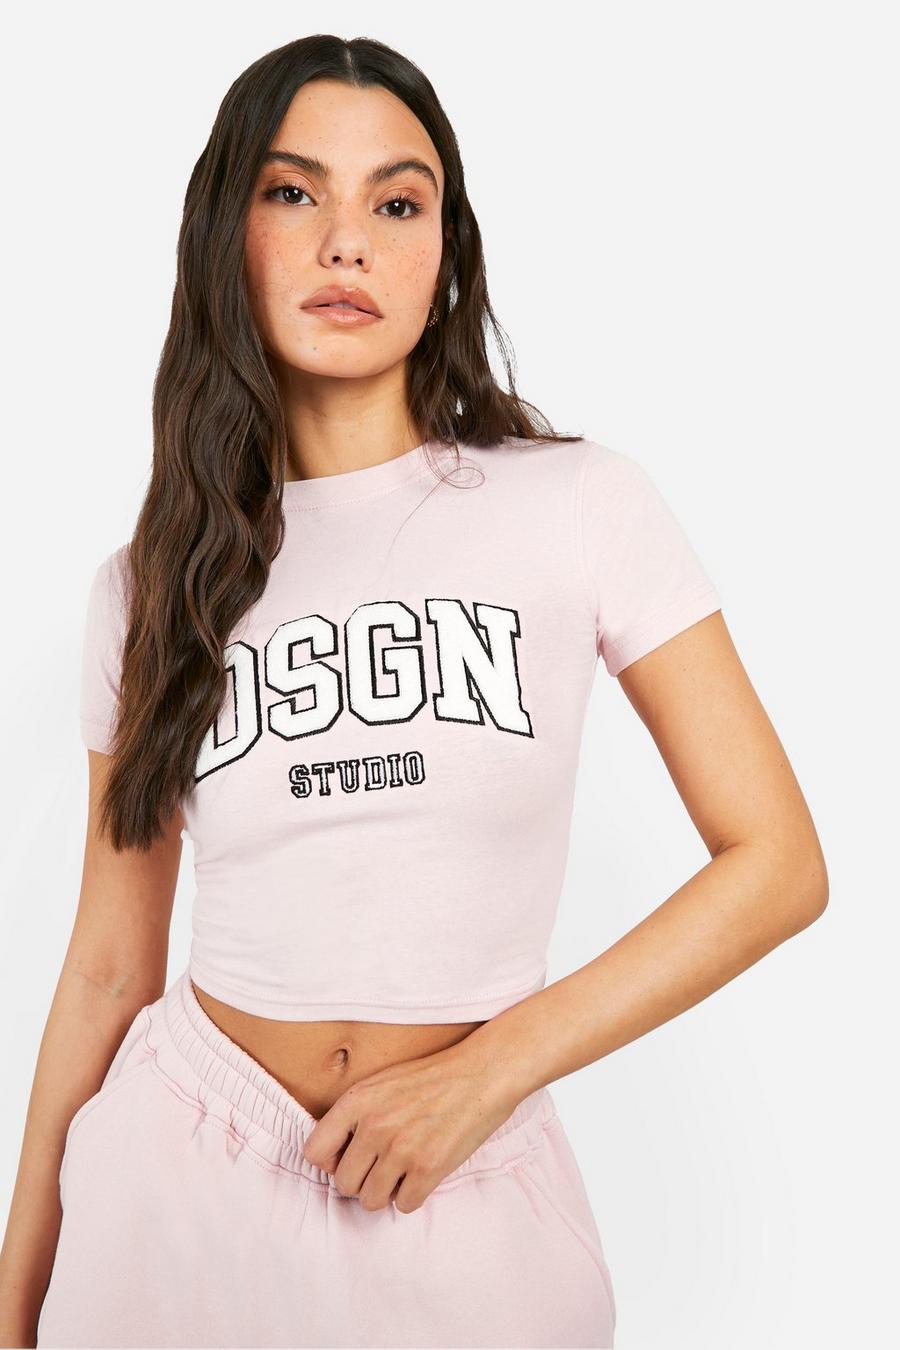 T-shirt en tissu éponge à slogan Dsgn Studio, Baby pink